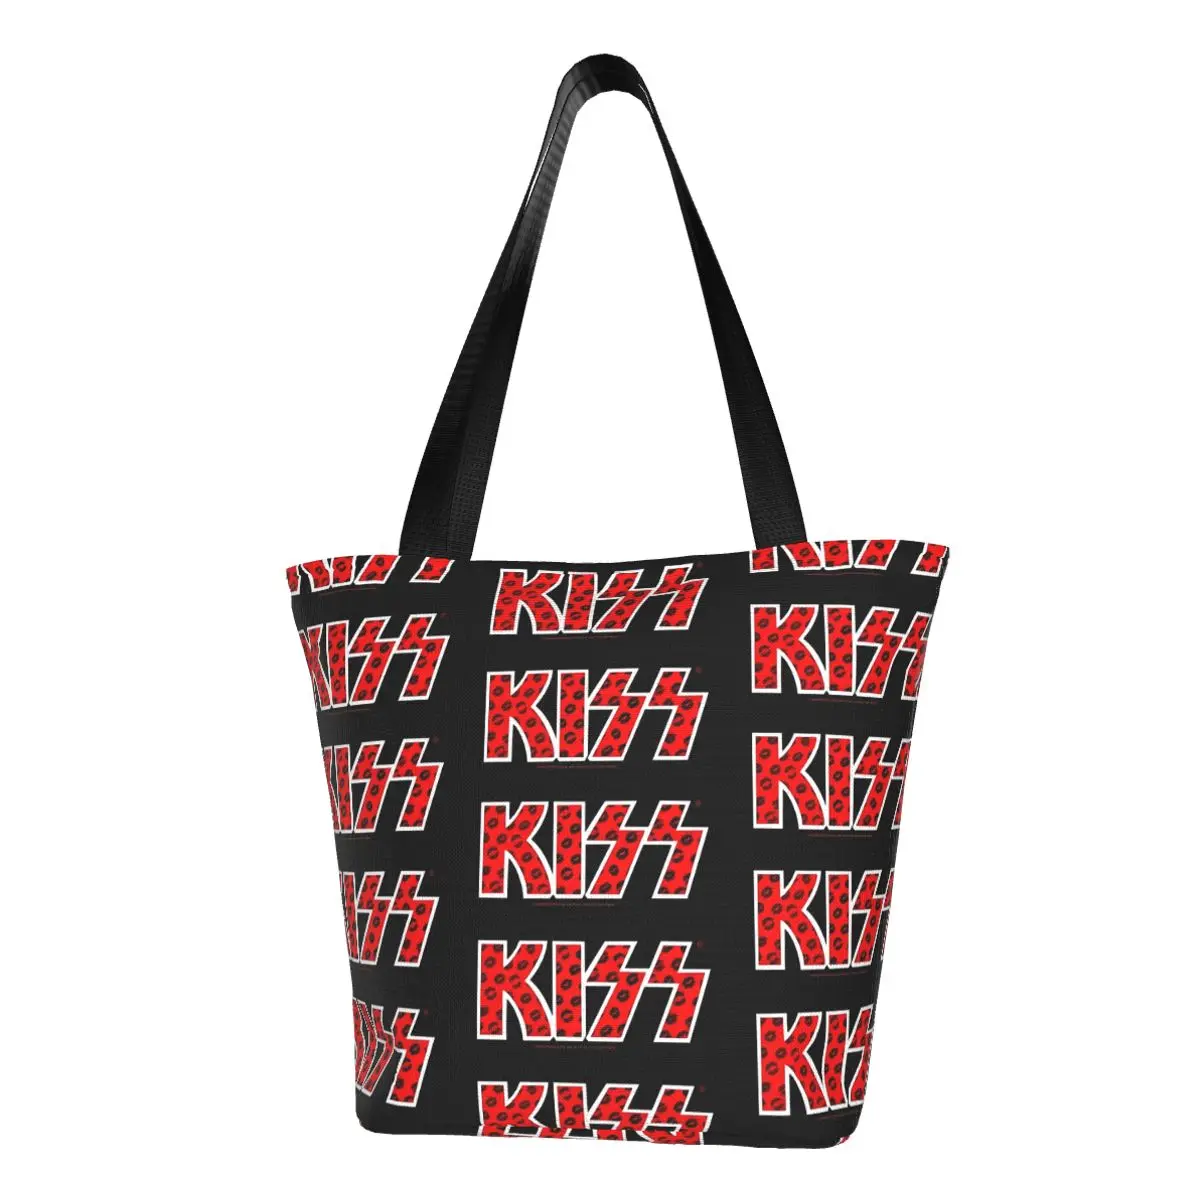 

Сумка-шоппер Kiss Band, Пляжная Сумочка с черными губами и логотипом, Женская графическая сумка на плечо, шоппер из полиэстера